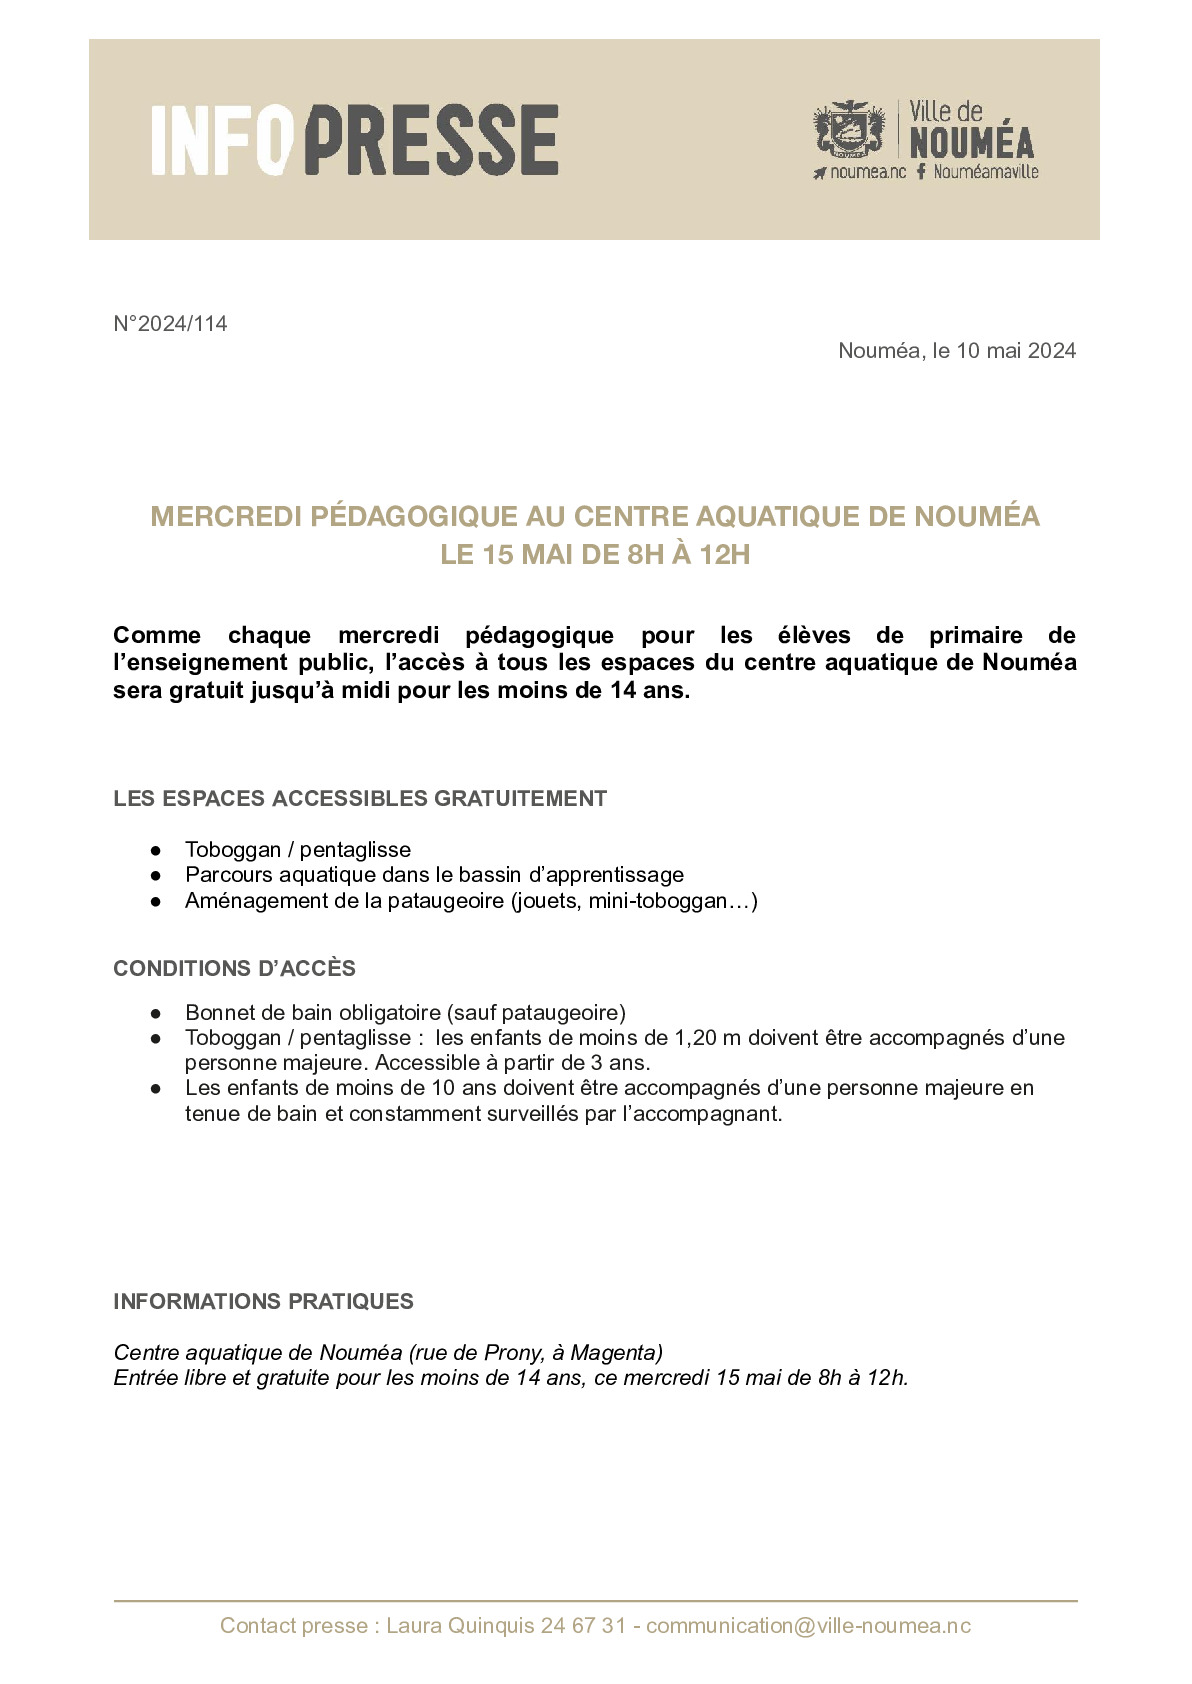 114 IP Mercredi pedagogique CAN 1505.pdf